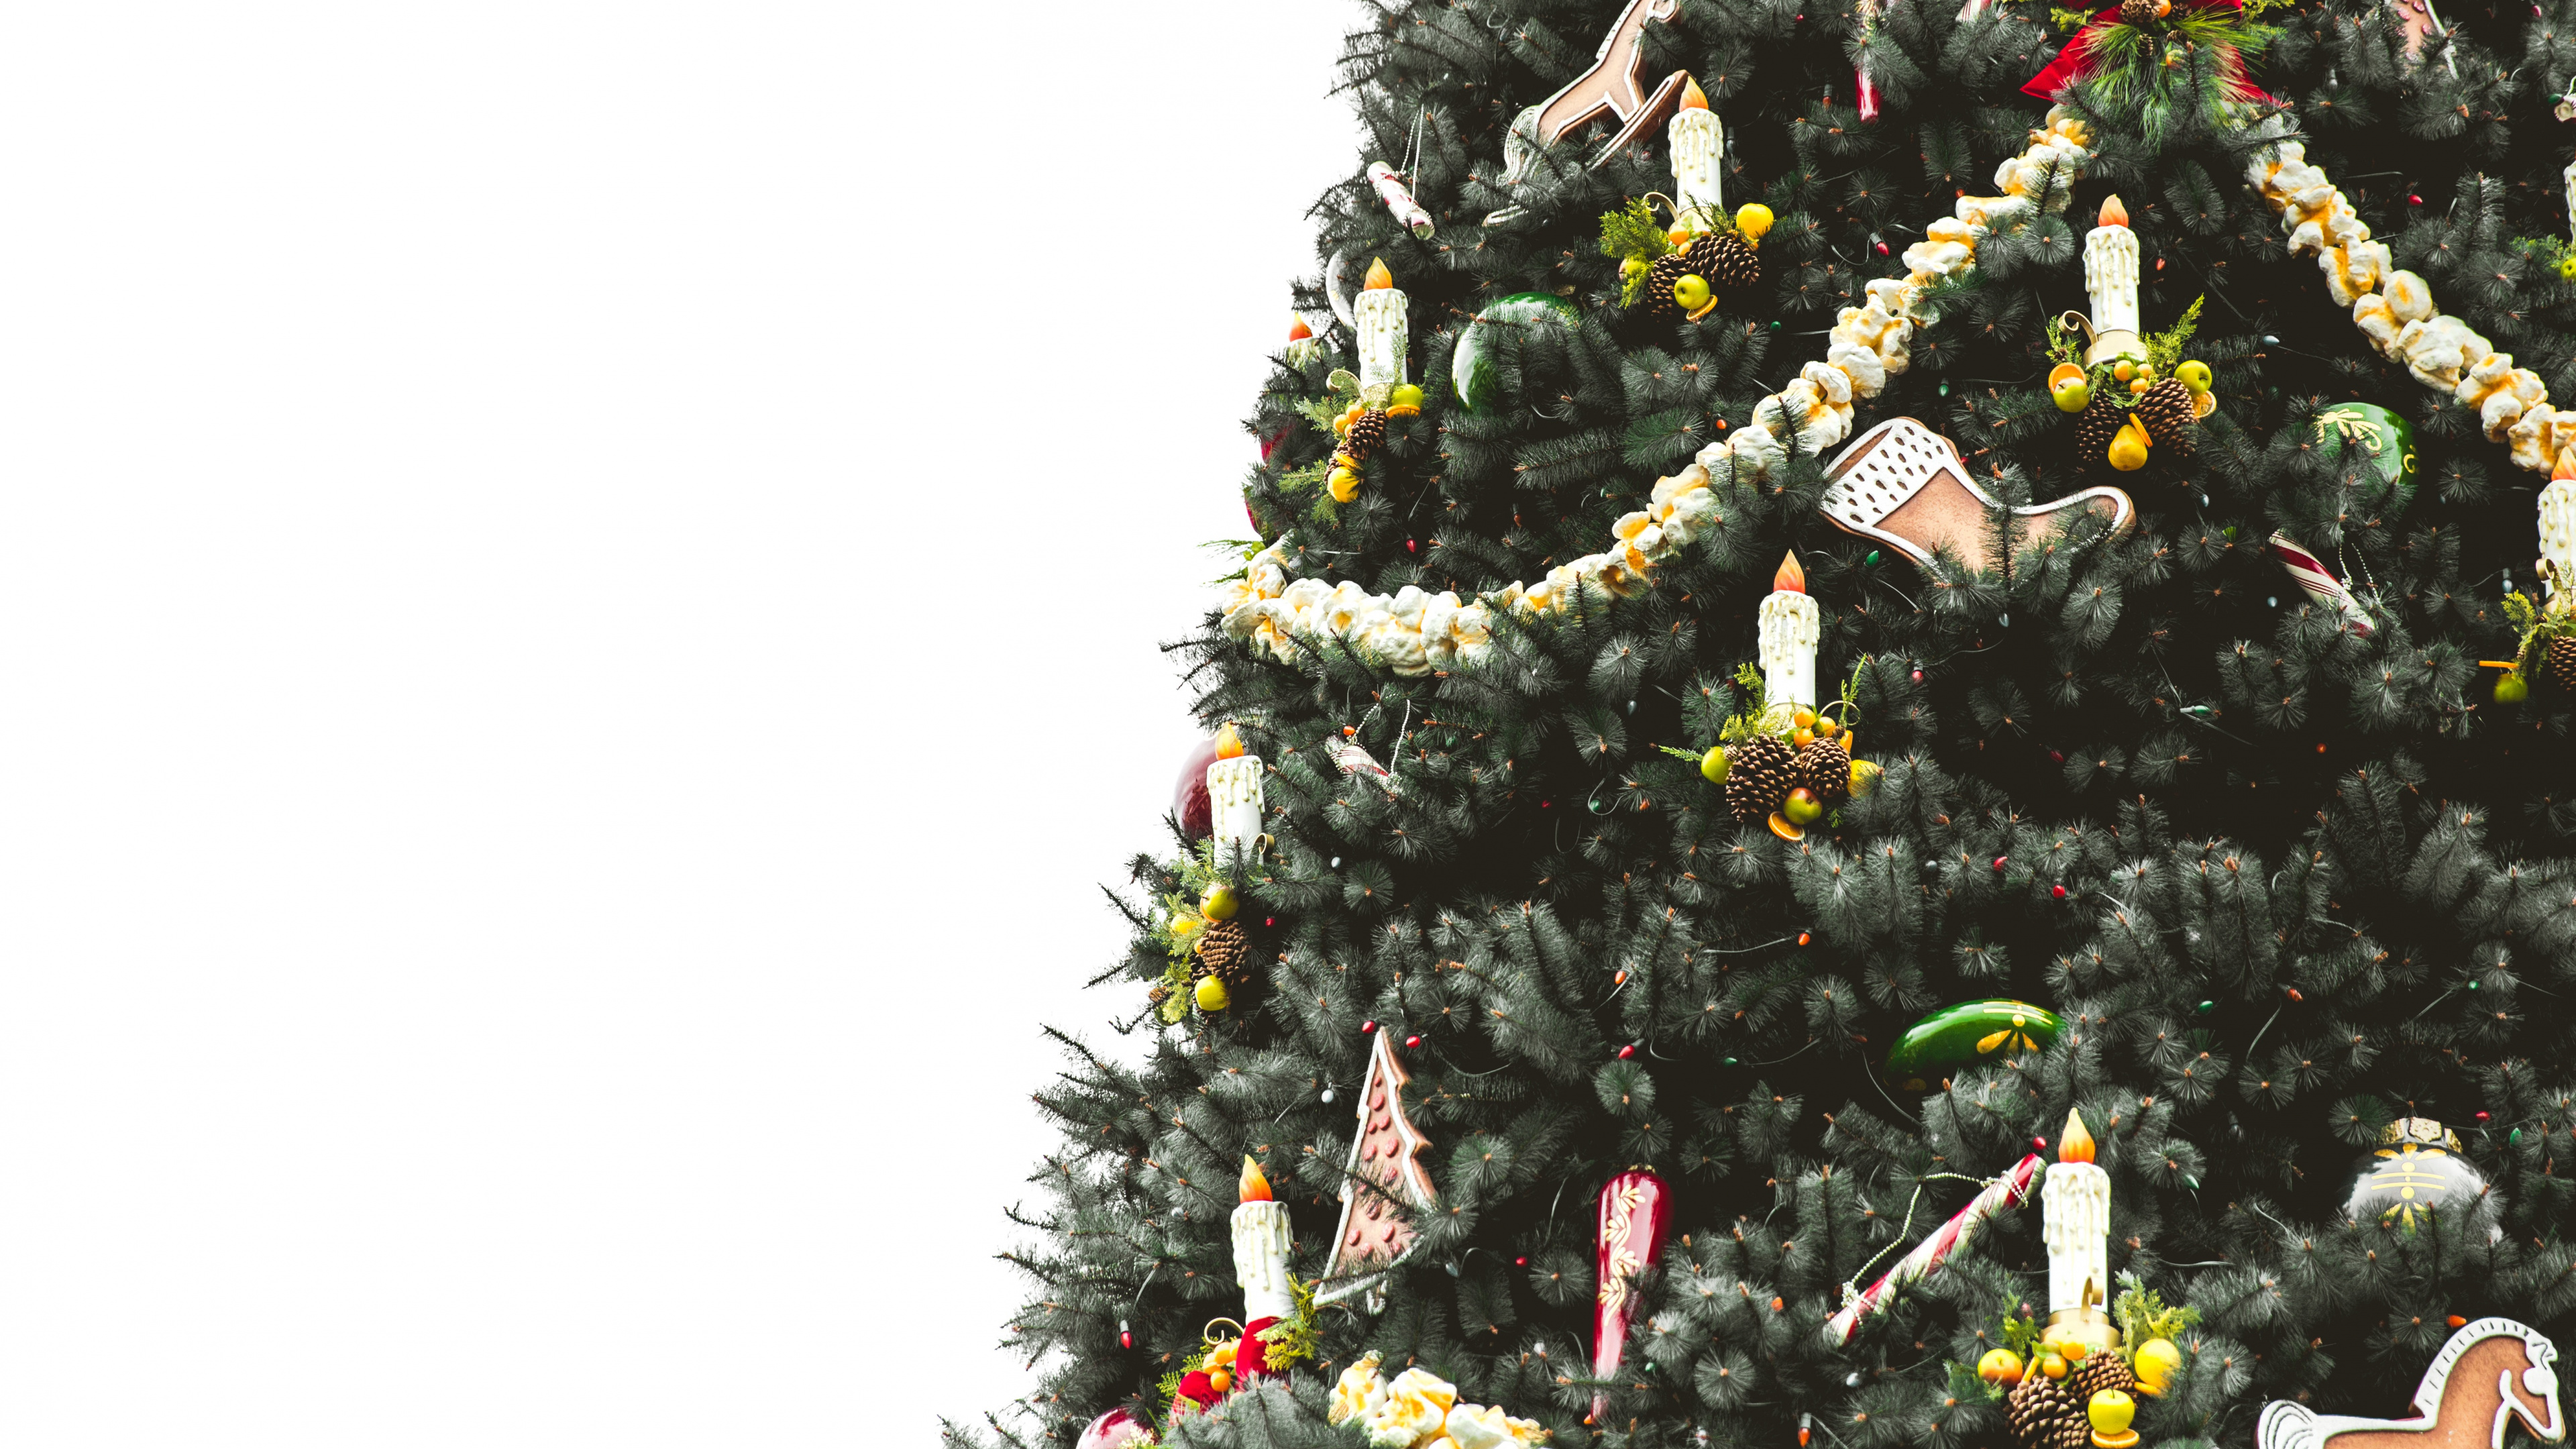 圣诞树, 圣诞节那天, 圣诞节和节日, 木本植物, Evergreen 壁纸 3840x2160 允许